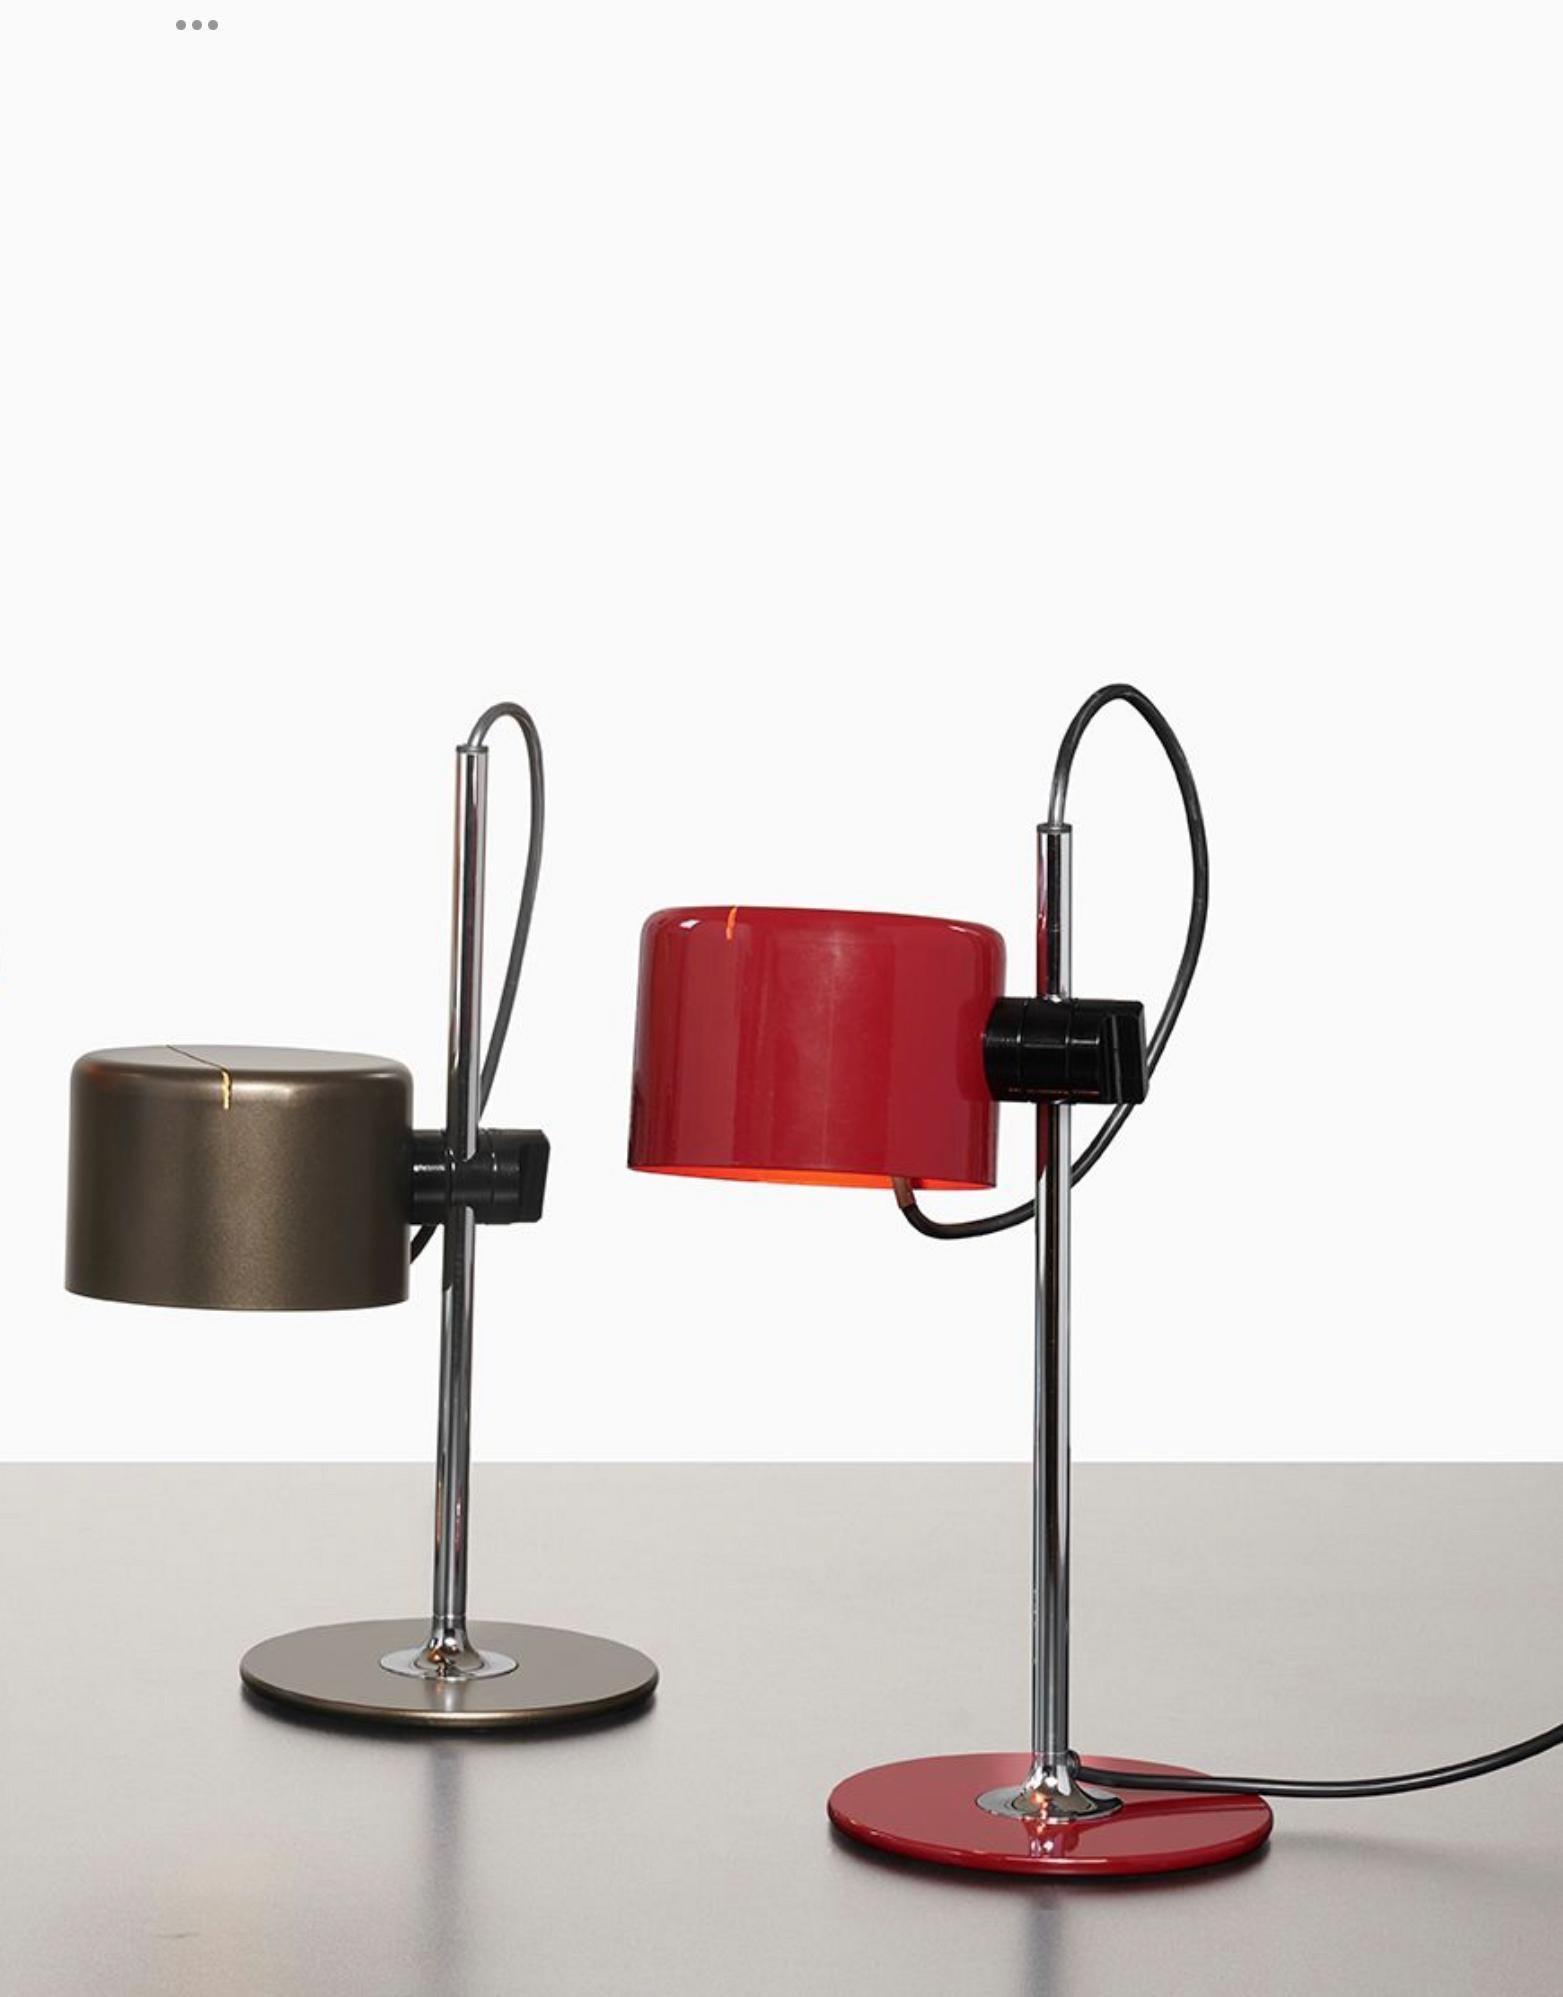 Satz von zwei Tischlampen Modell Mini Coupe entworfen von Joe Colombo.
Tischleuchte mit direktem Licht, Sockel aus lackiertem Metall, verchromter Schaft, verstellbarer Reflektor aus lackiertem Aluminium.
Hergestellt von Oluce, Italien.

Coupé